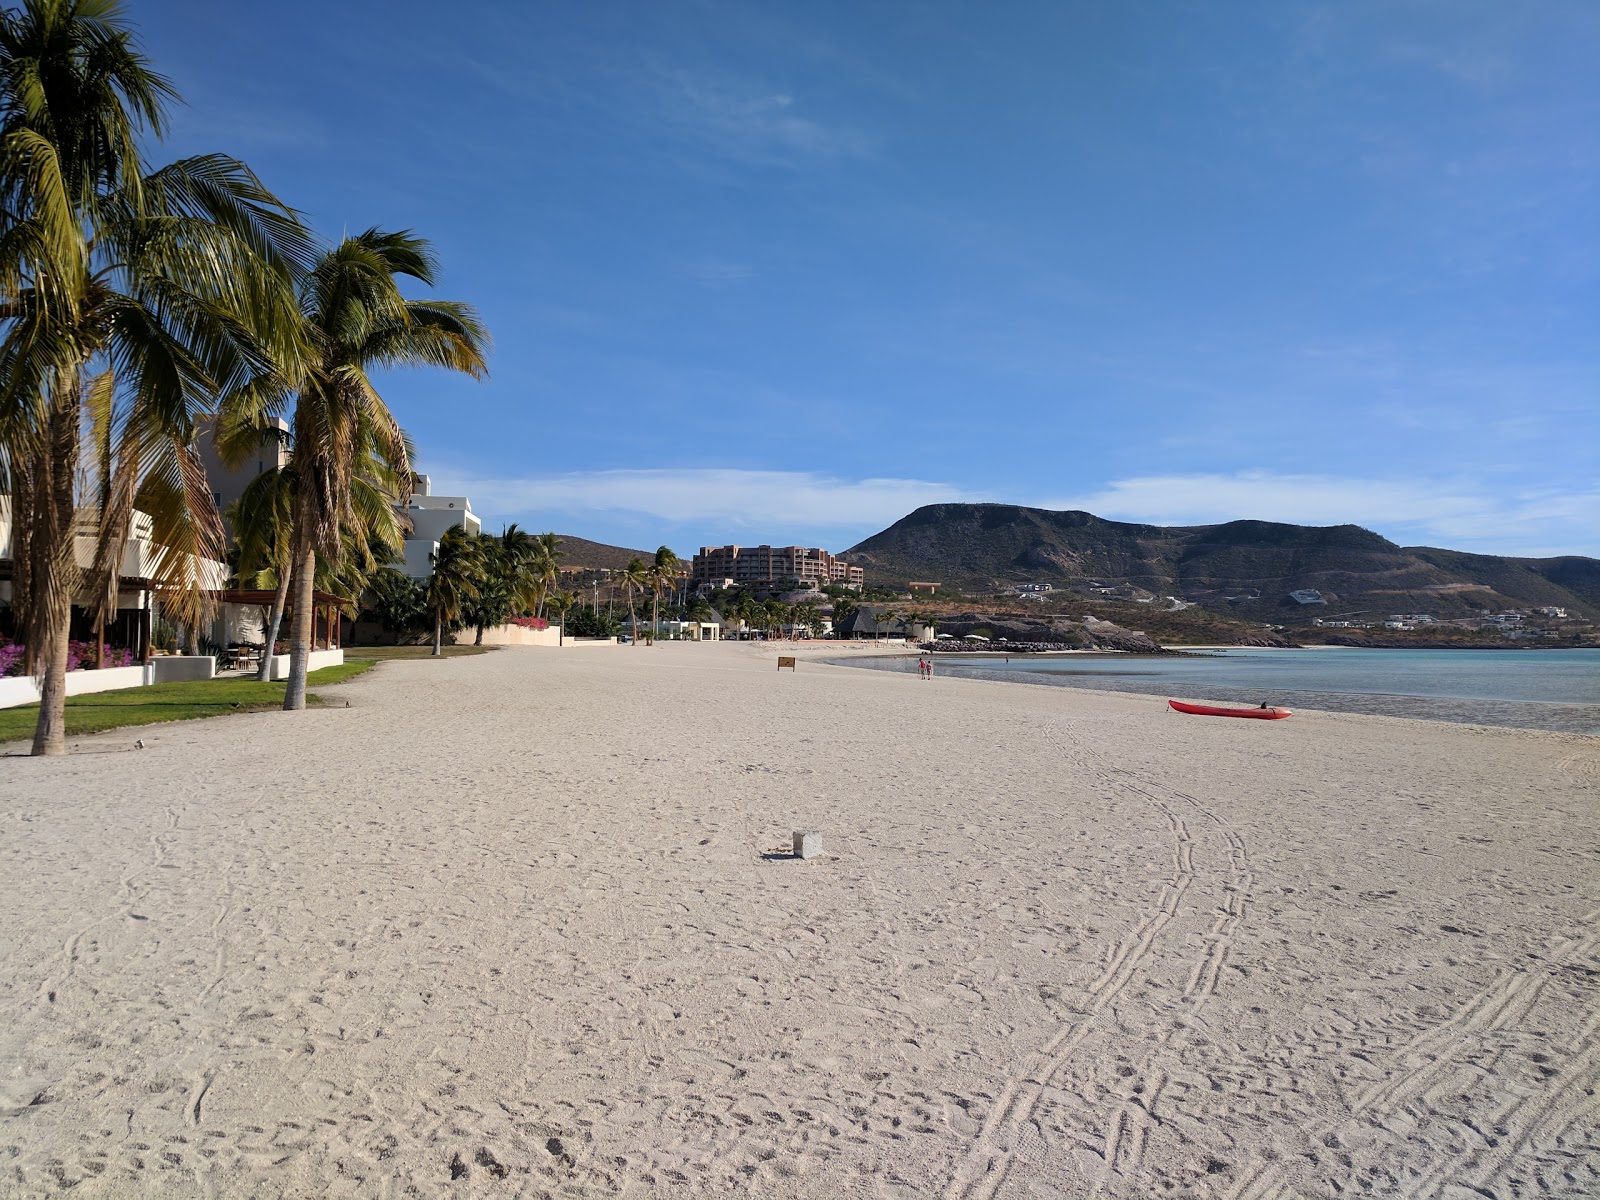 Playa Puerta Cortes'in fotoğrafı parlak ince kum yüzey ile